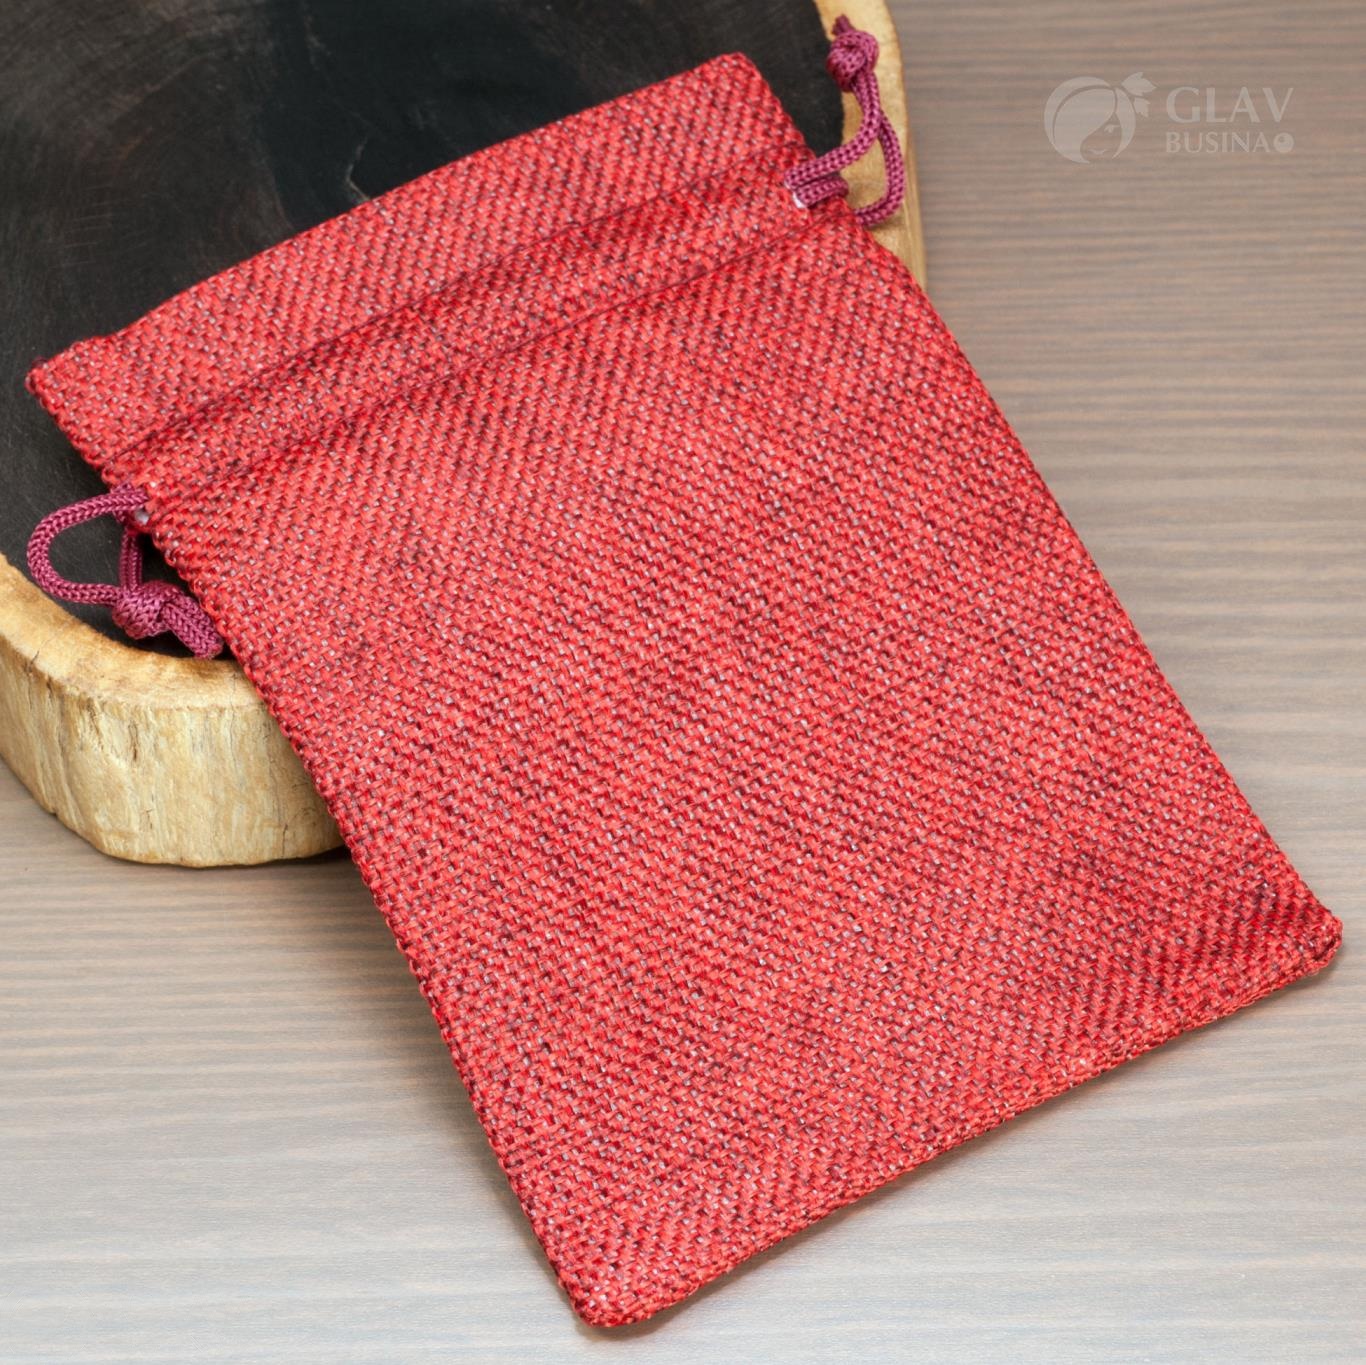 Темно-красные мешочки из искусственной джутовой мешковины размером 14.5x10.5 см, подходят для упаковки подарков и хранения мелочей.